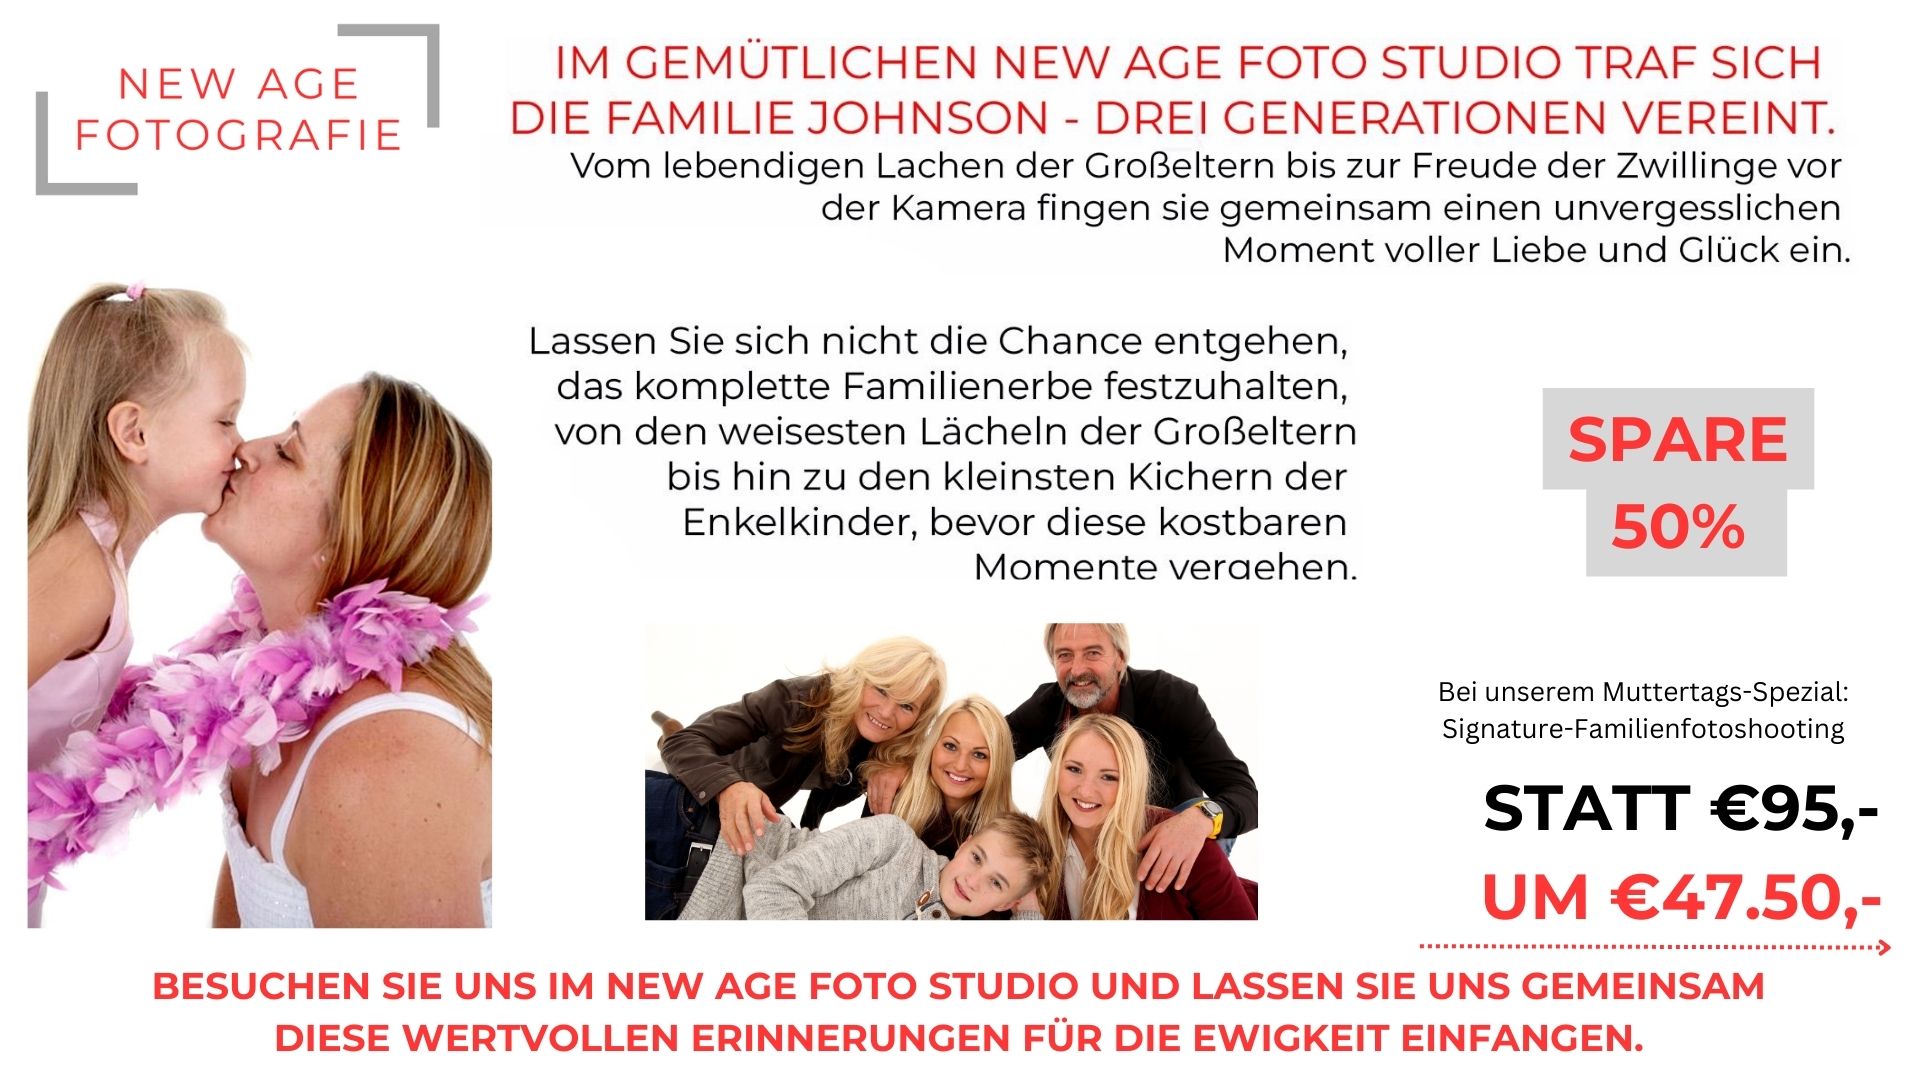 Werbung für ein Fotostudio mit Fotografien lächelnder Familienmitglieder und einer Rabattaktion für ein Familienfotoshooting